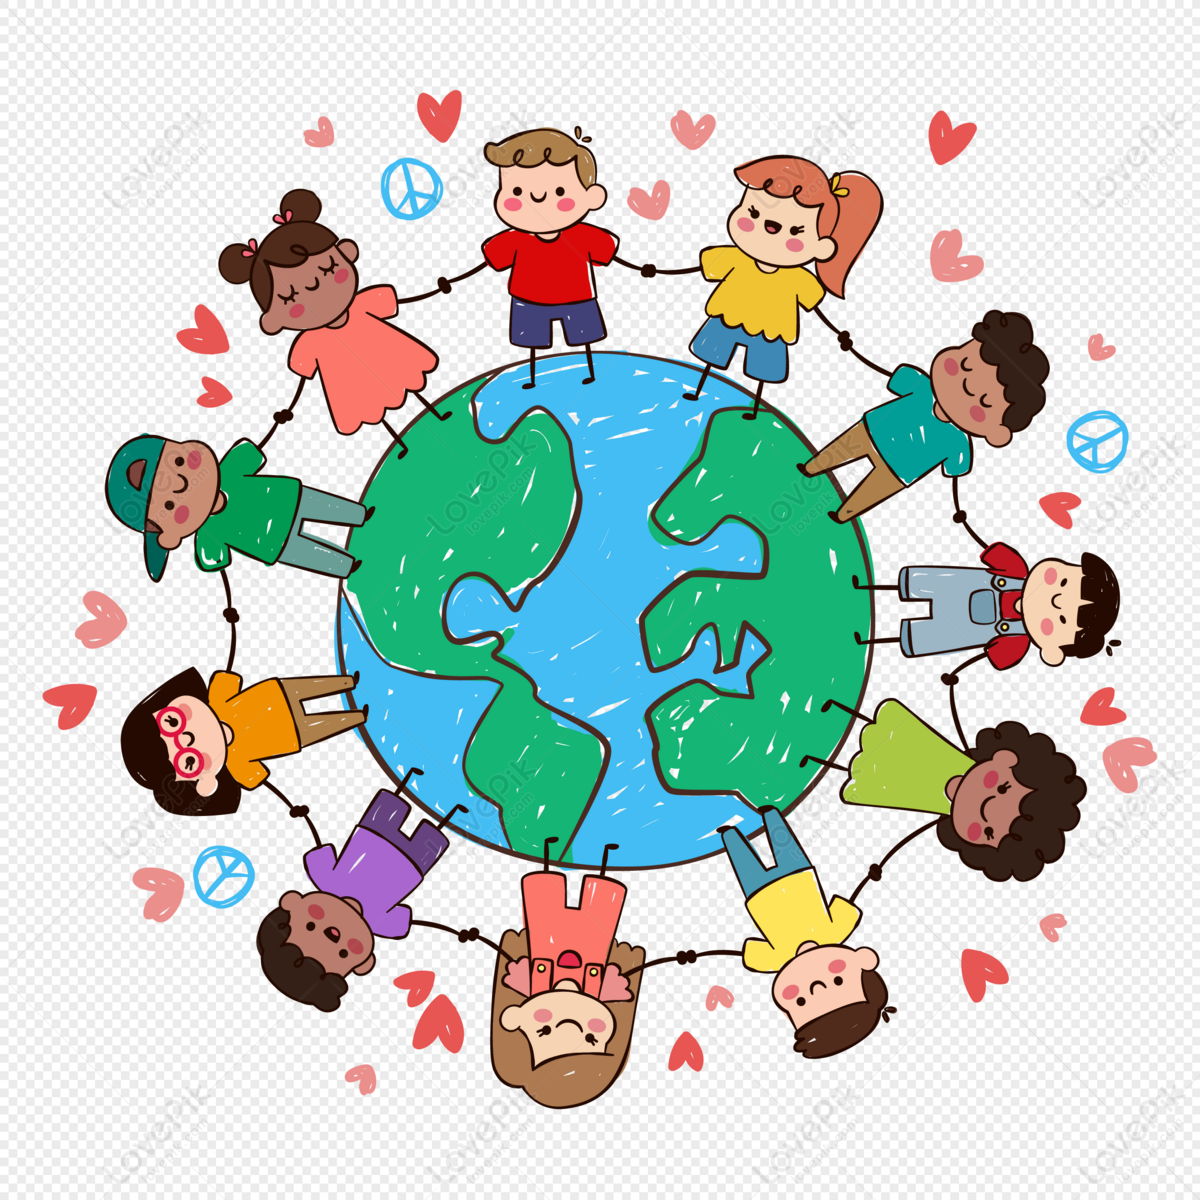 Children Holding Hands Around The Earth: Nhìn lại những hình ảnh đầy ý nghĩa về các em nhỏ cùng nắm tay nhau quanh Trái Đất, chắc chắn sẽ khiến bạn cảm nhận được sự đoàn kết, tình yêu thương và hy vọng của toàn bộ thế giới. Hãy thưởng thức và cảm nhận sự ý nghĩa của bức tranh này.